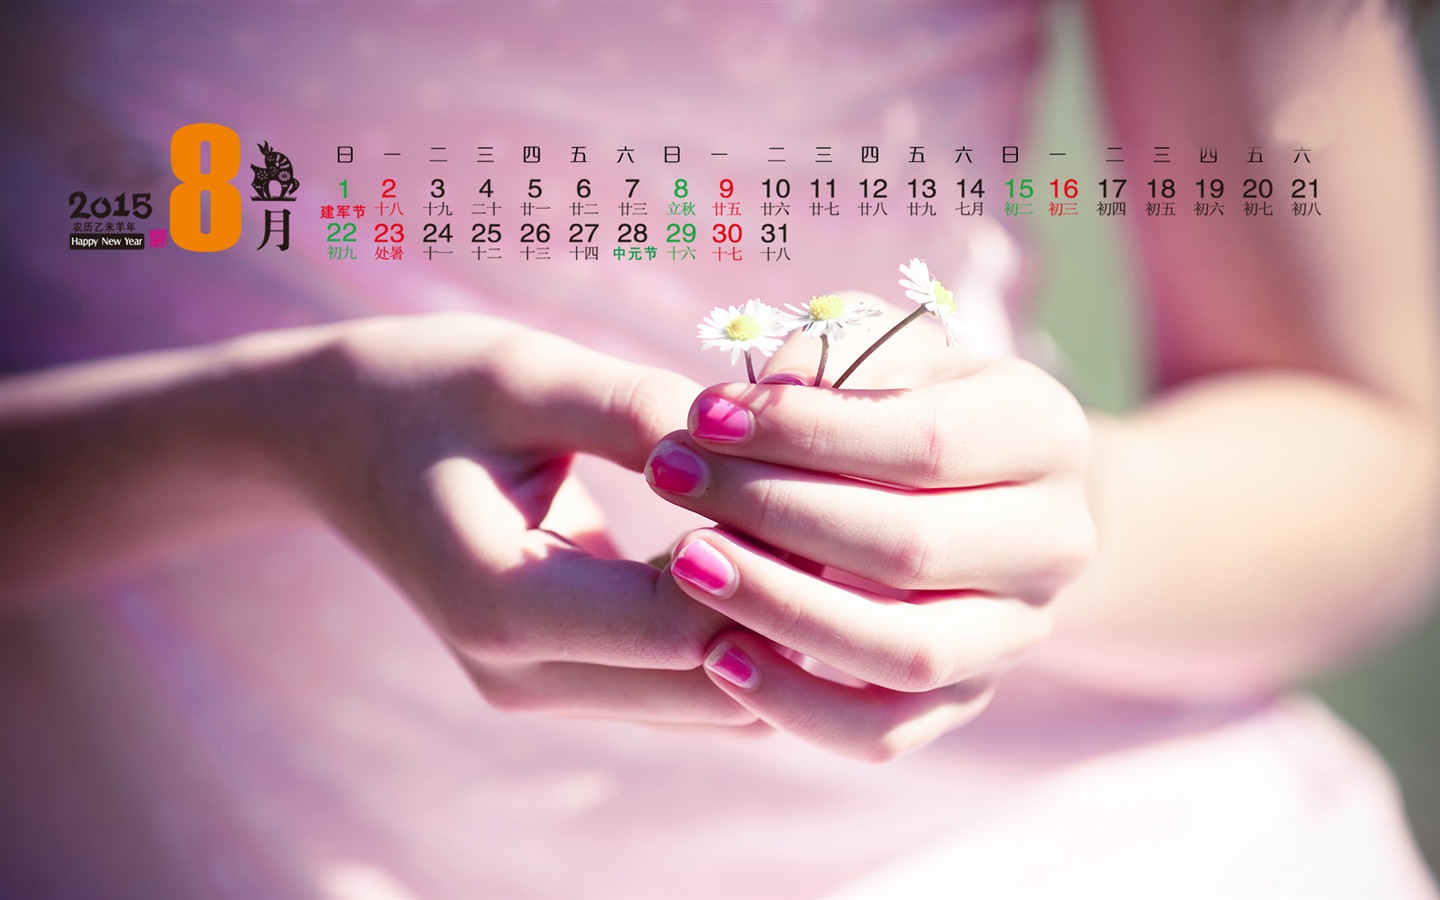 Calendar 2015 HD wallpapers #5 - 1440x900